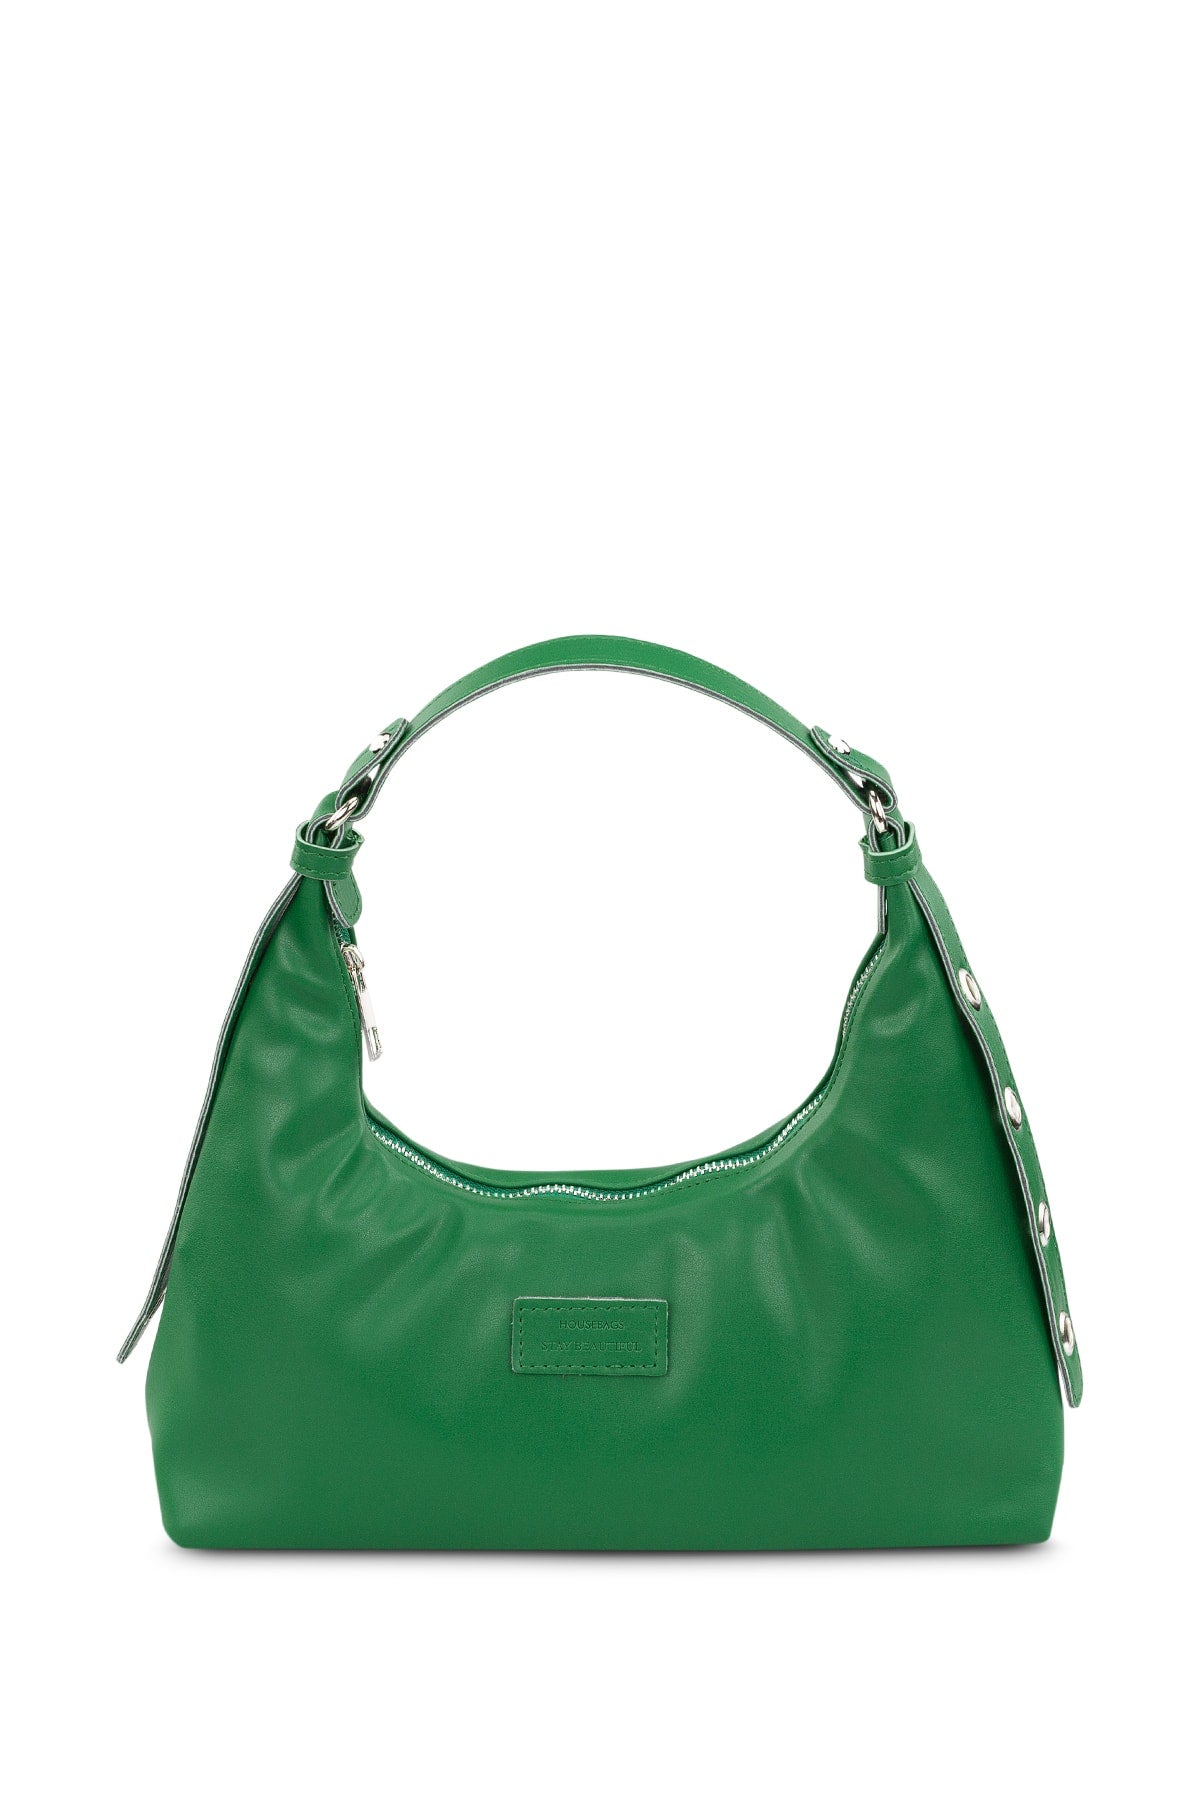 Women's Green Baguette Bag 205